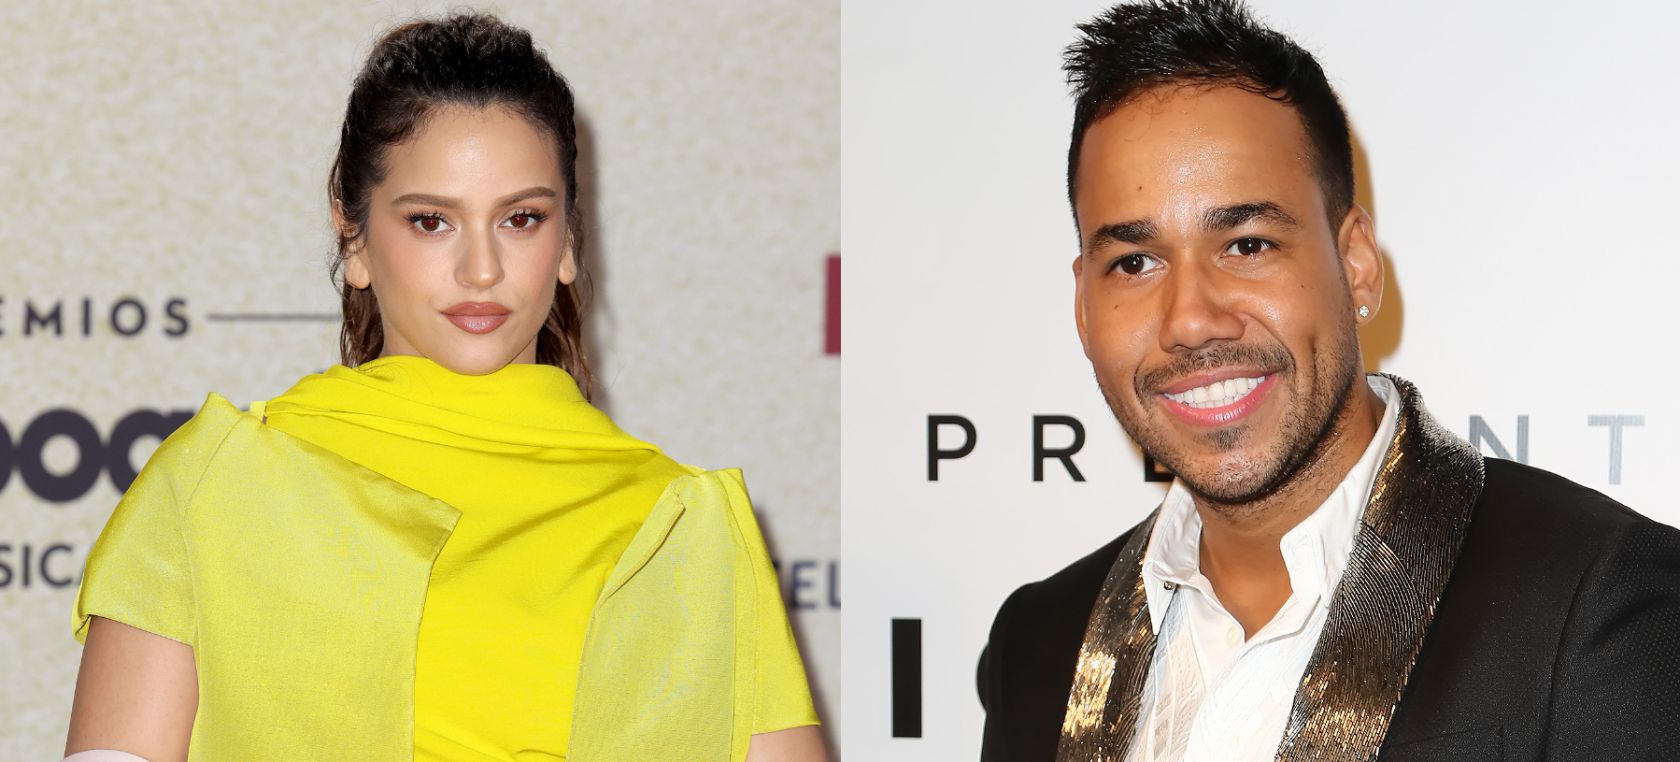 Rosalía y Romeo Santos anuncian su colaboración tan esperada: ‘El Pañuelo’